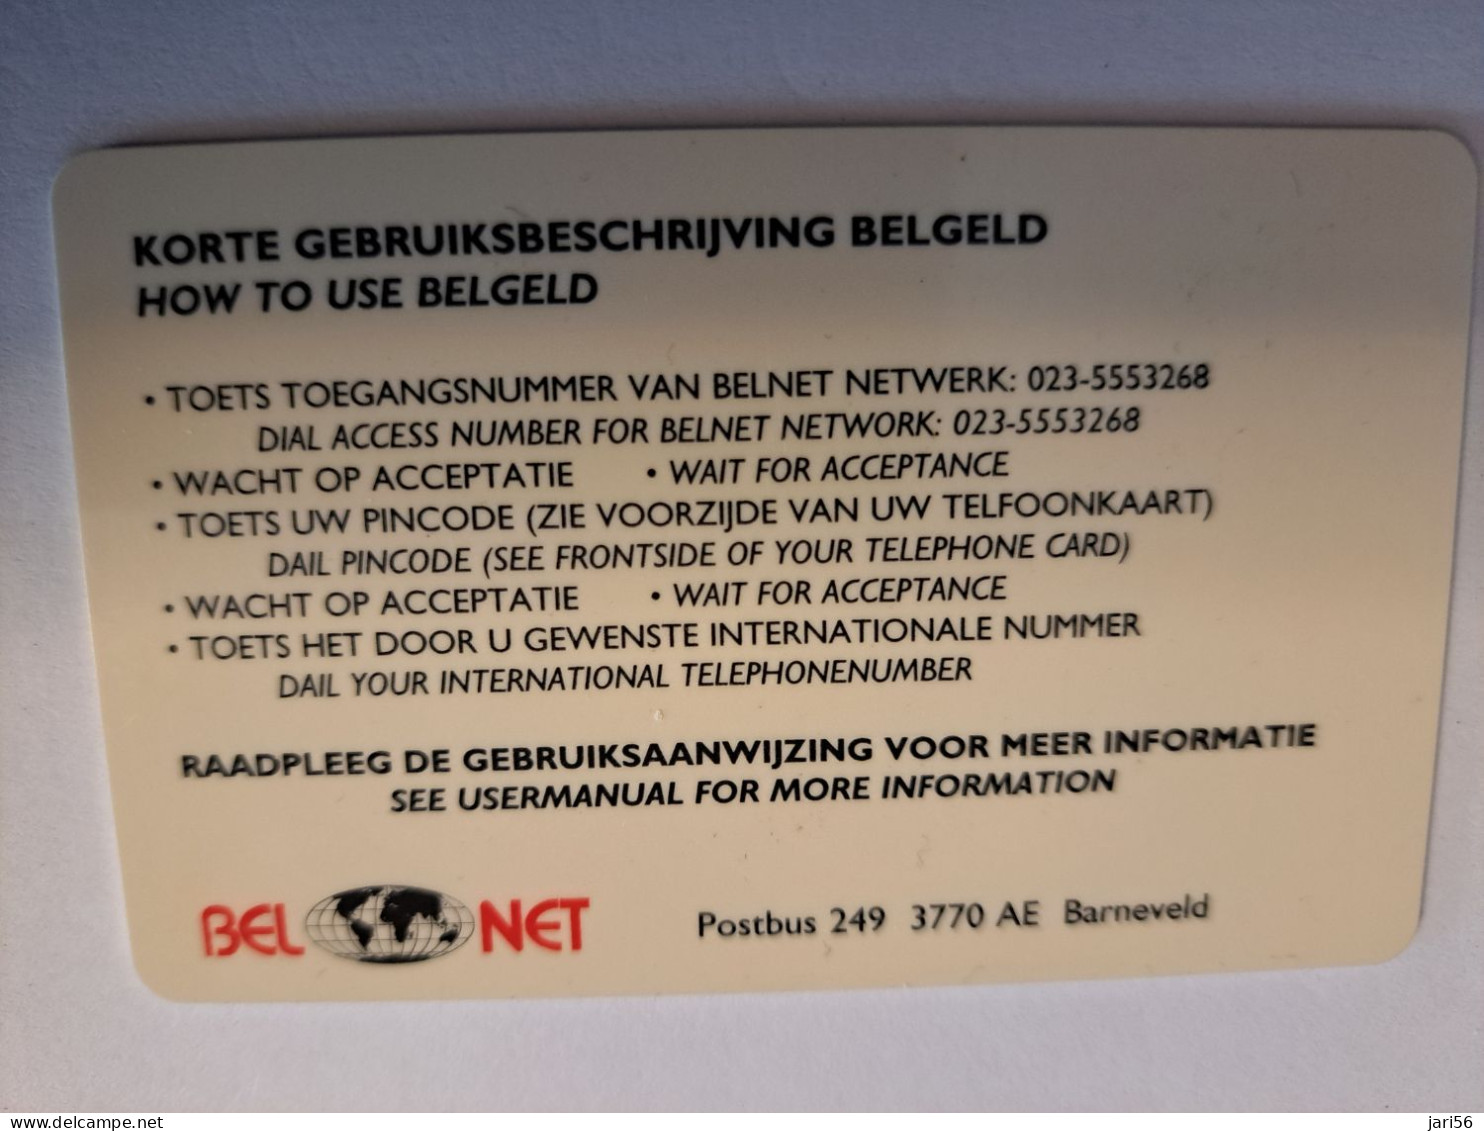 NETHERLANDS  PREPAID / HFL 50,- / INDONESIA / BEL NET/ BELGELD/ THICK CARD  / / OLDER CARD ! / USED  CARD   ** 16219** - [3] Sim Cards, Prepaid & Refills